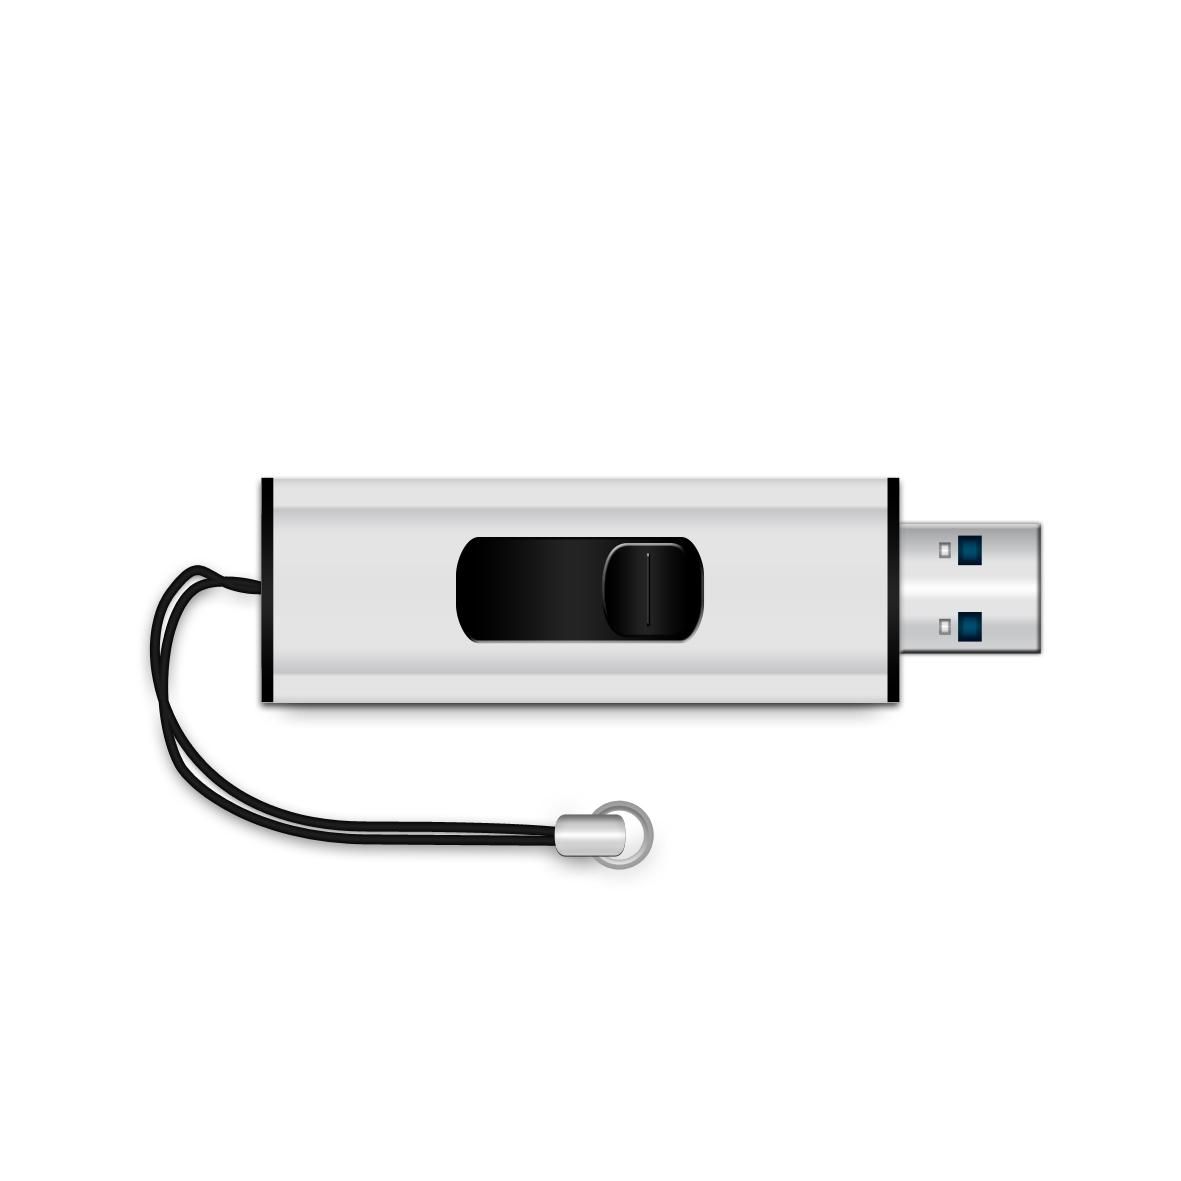 MEDIARANGE USB-Stick  8GB MediaRange USB 3.0 SuperSpeed